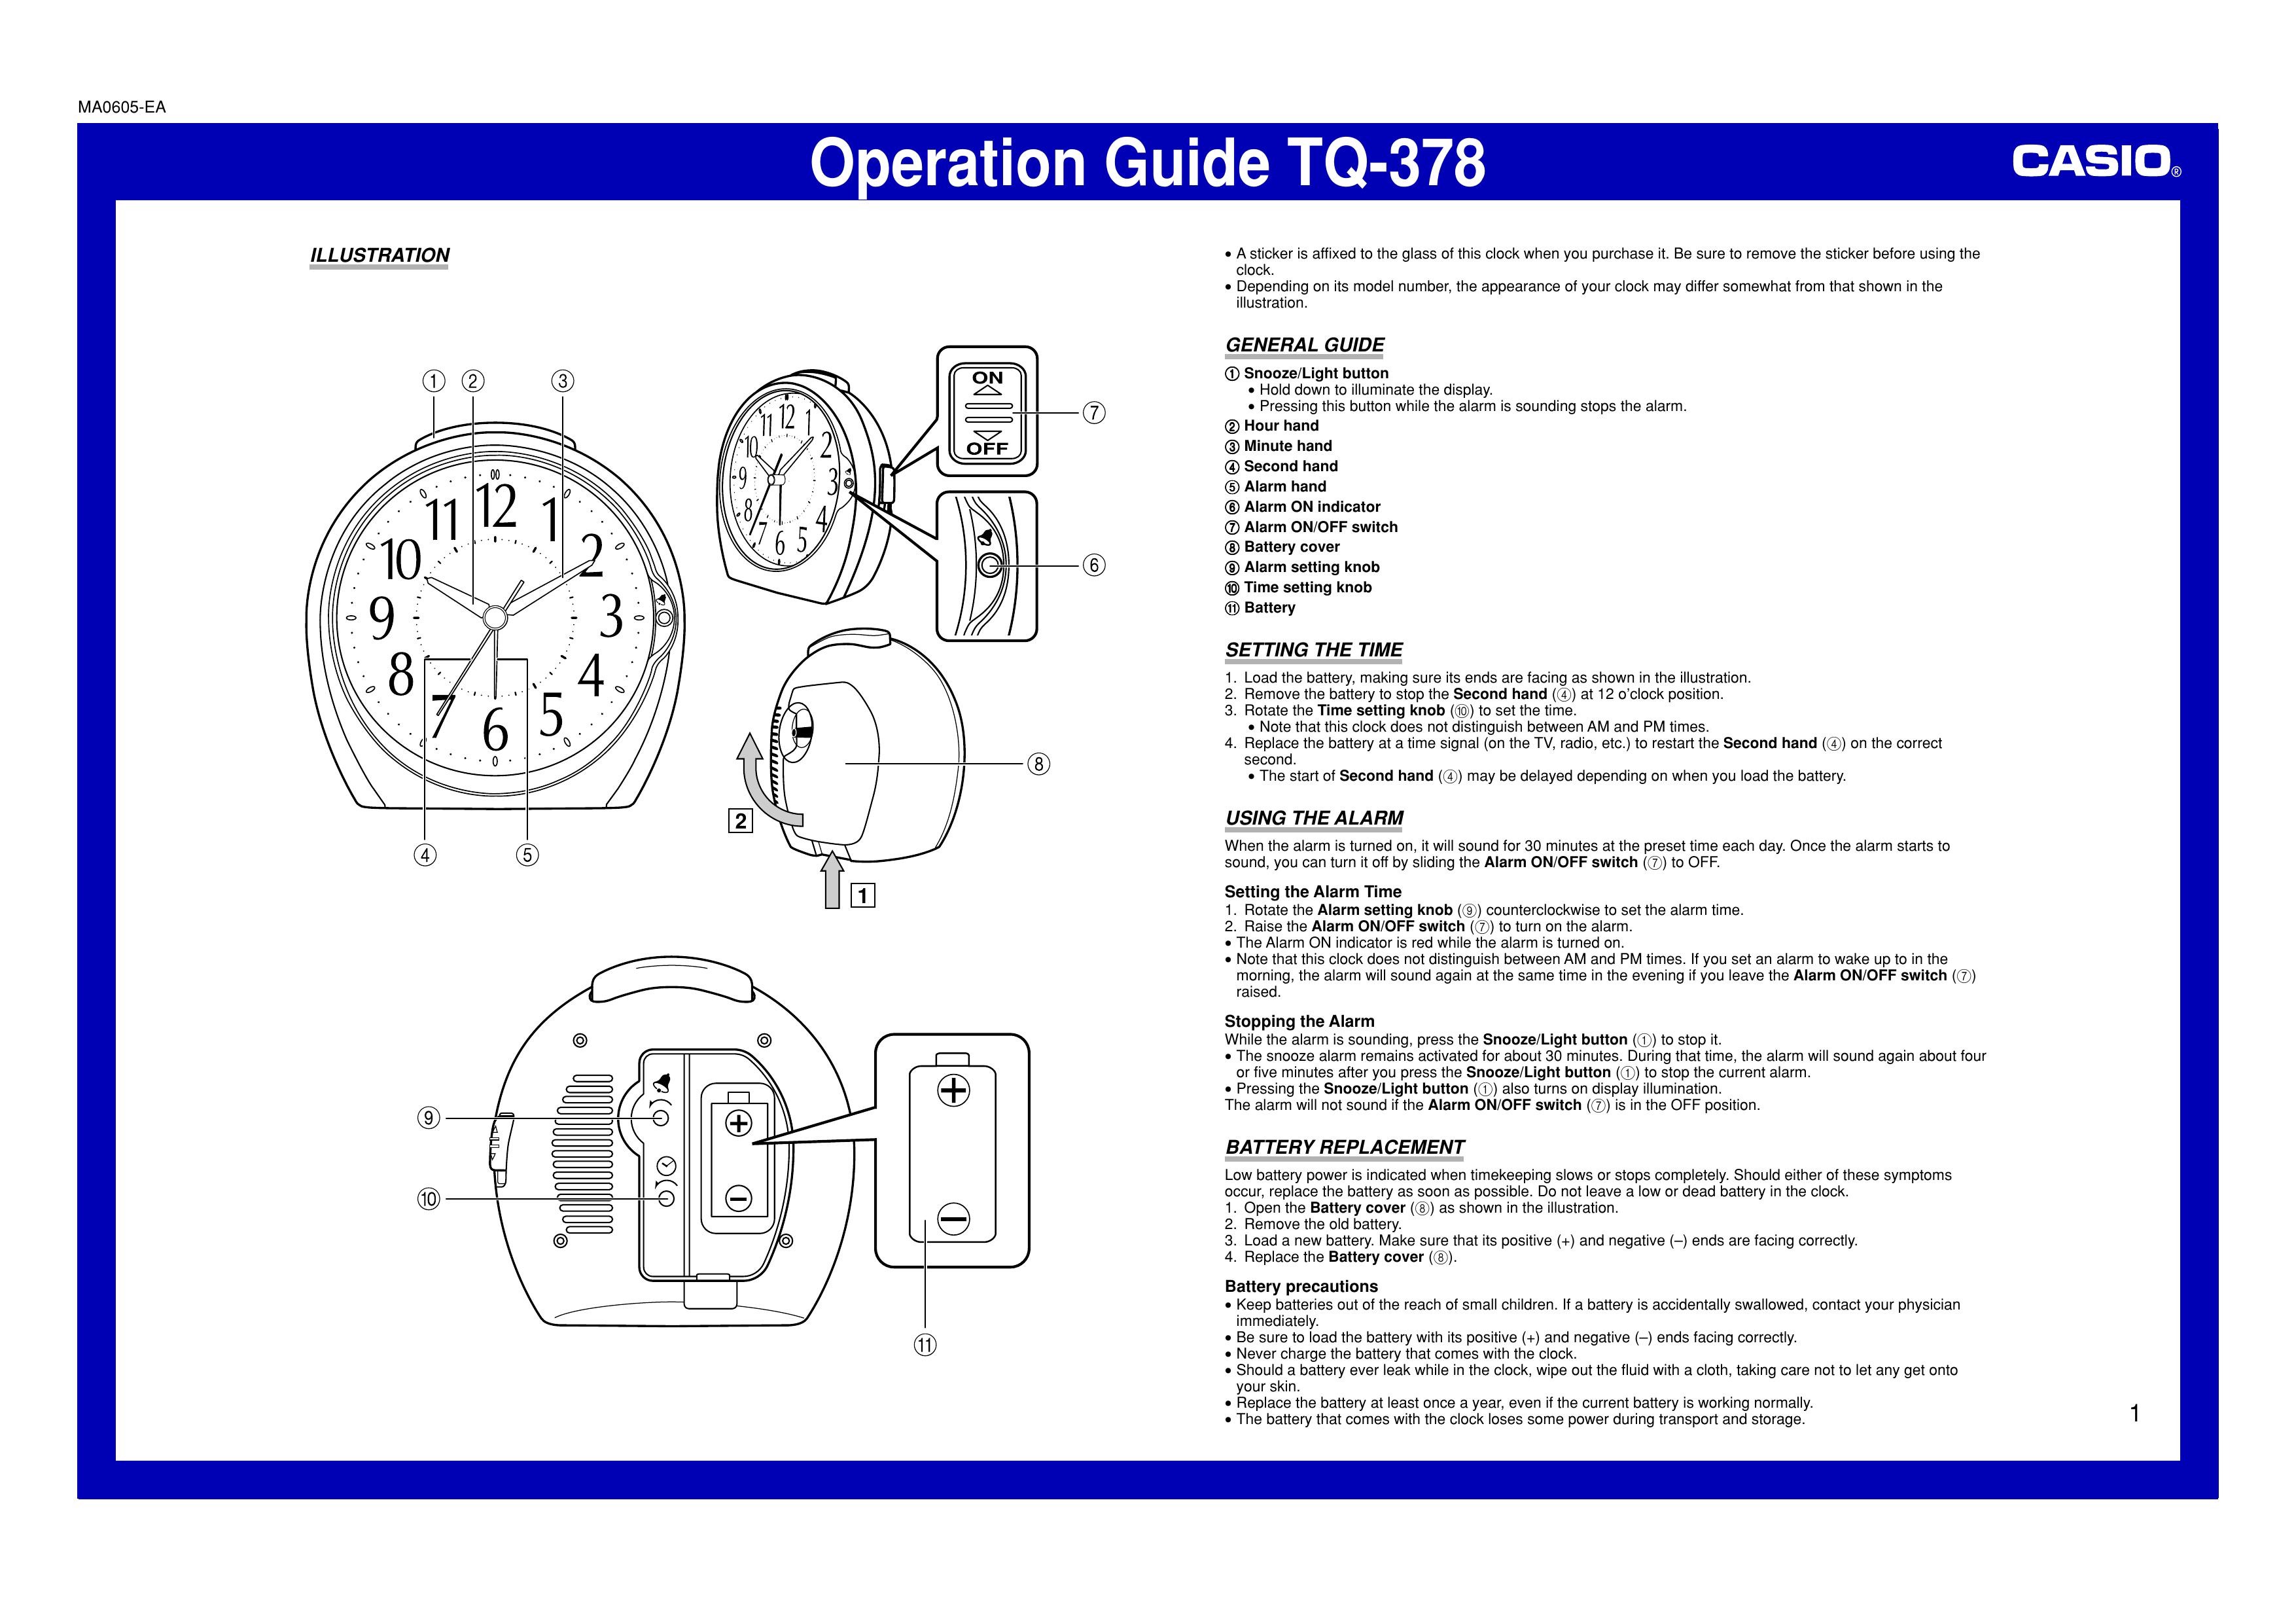 Casio MA0605-EA Clock Radio User Manual